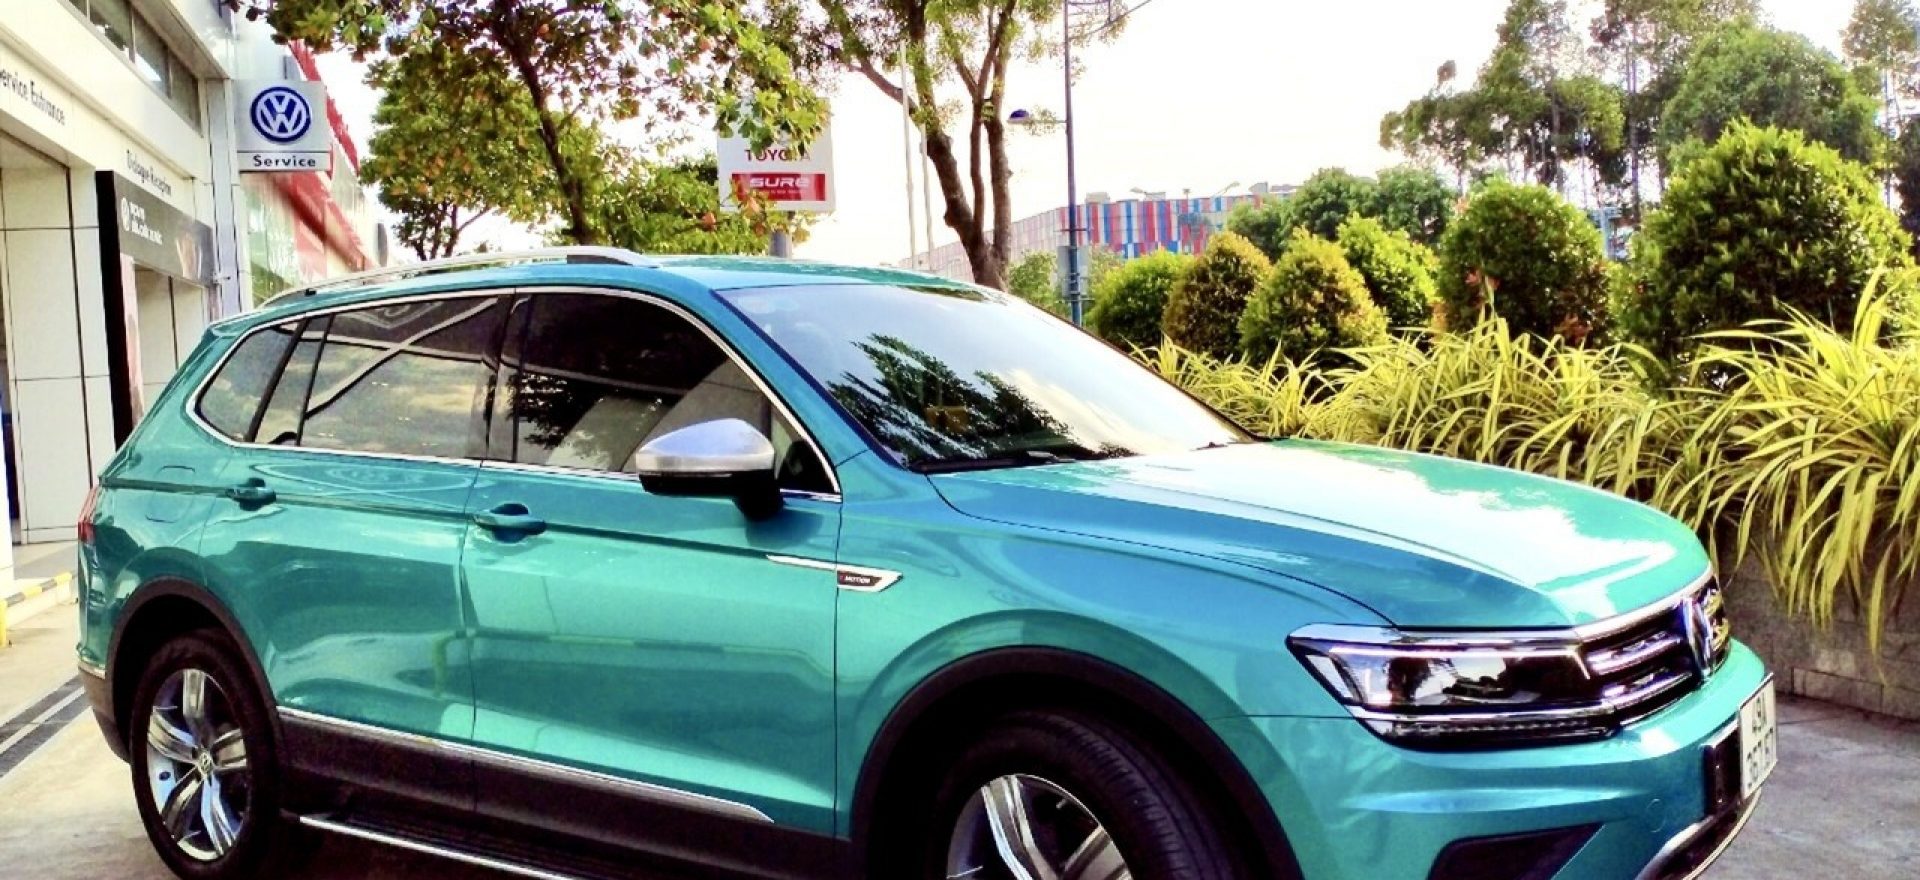 tiguan 2021 xanh ngoc luc bao - Volkswagen Sai Gon